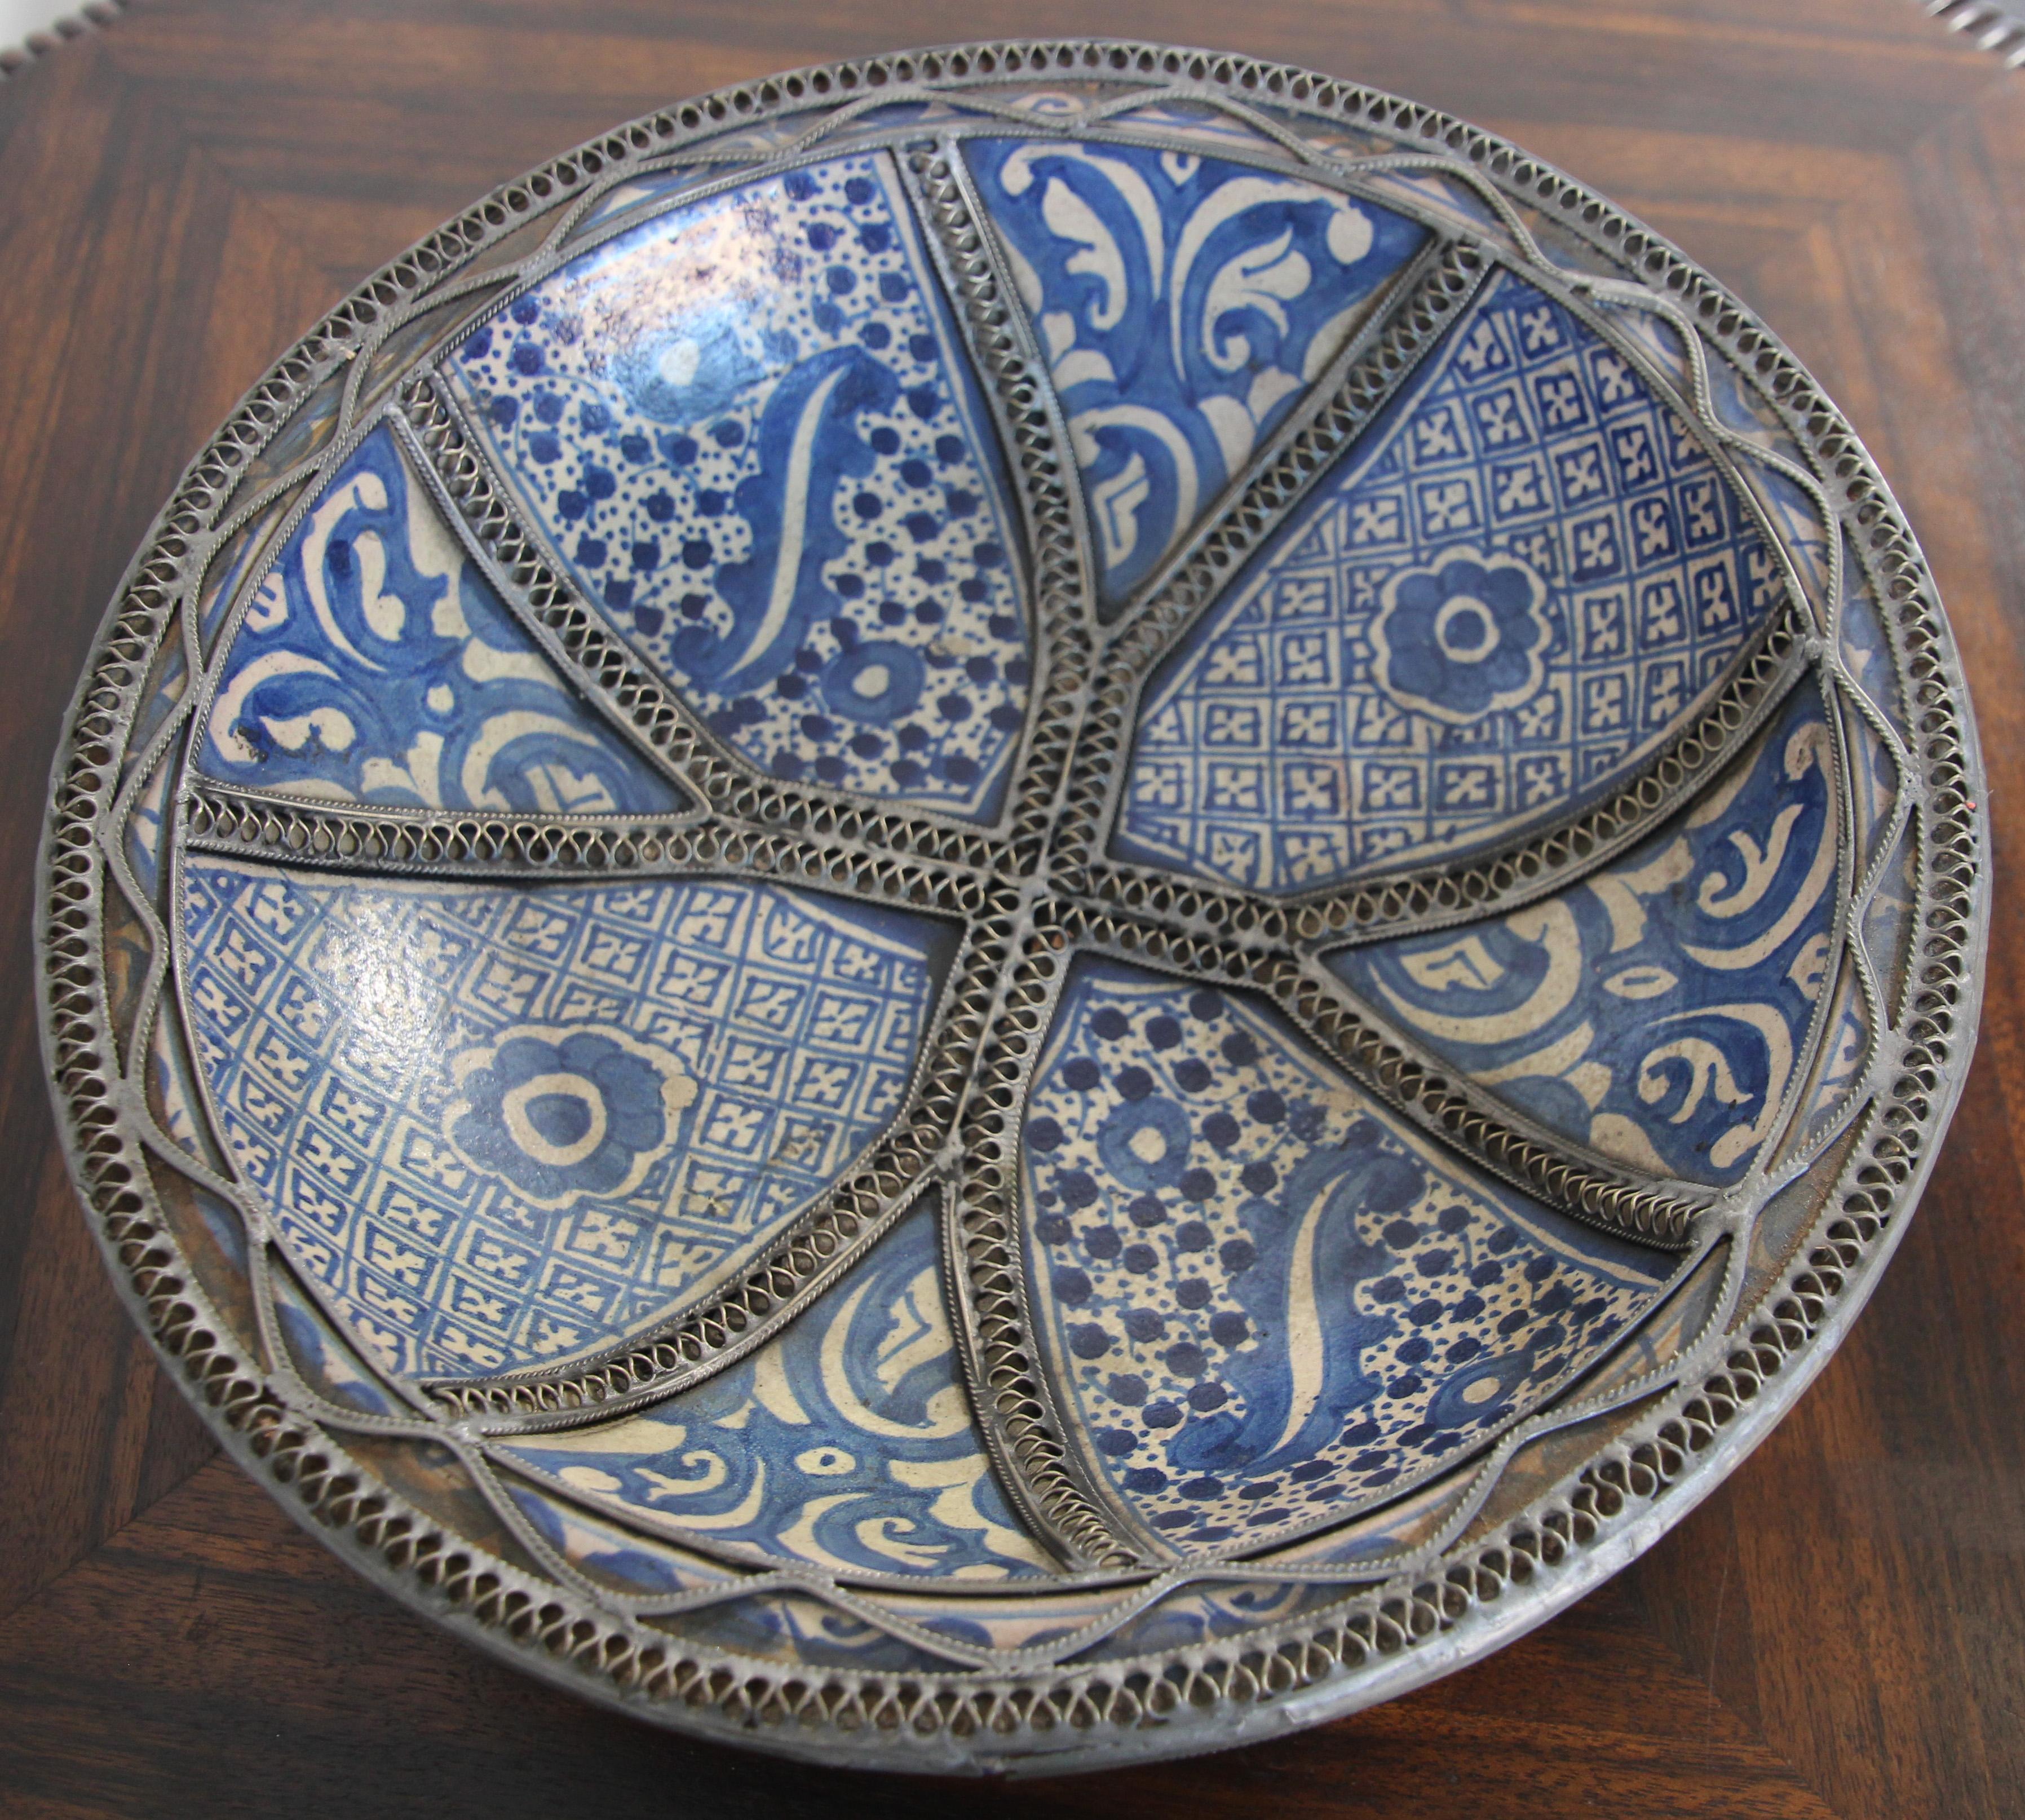 Bols, plats en céramique marocaine Bleu de Fez, fabriqués à la main. 
Bol en céramique Bleu de Fès, très beaux motifs peints à la main par un artiste de Fès.
Motifs mauresques géométriques et floraux et ornés de motifs en filigrane en